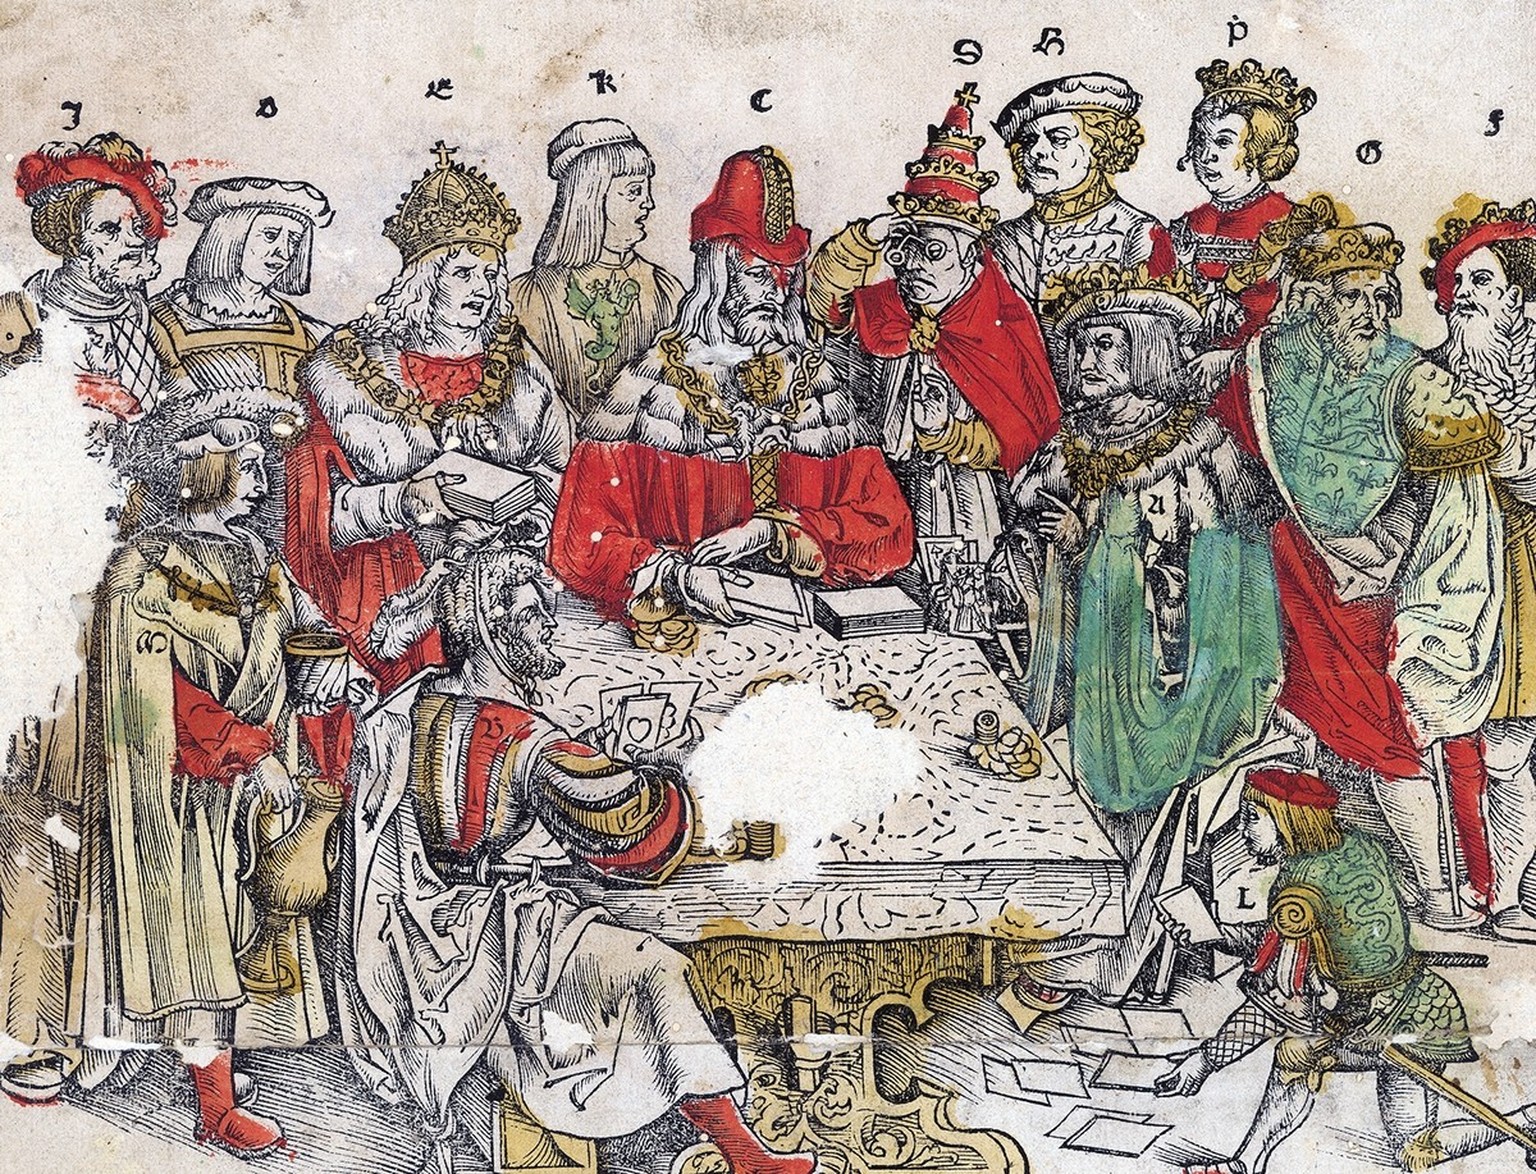 «Das Spiel von Mailand», Holzschnitt von Hans Rüegger, 1514.
https://doi.org/10.7891/e-manuscripta-92156